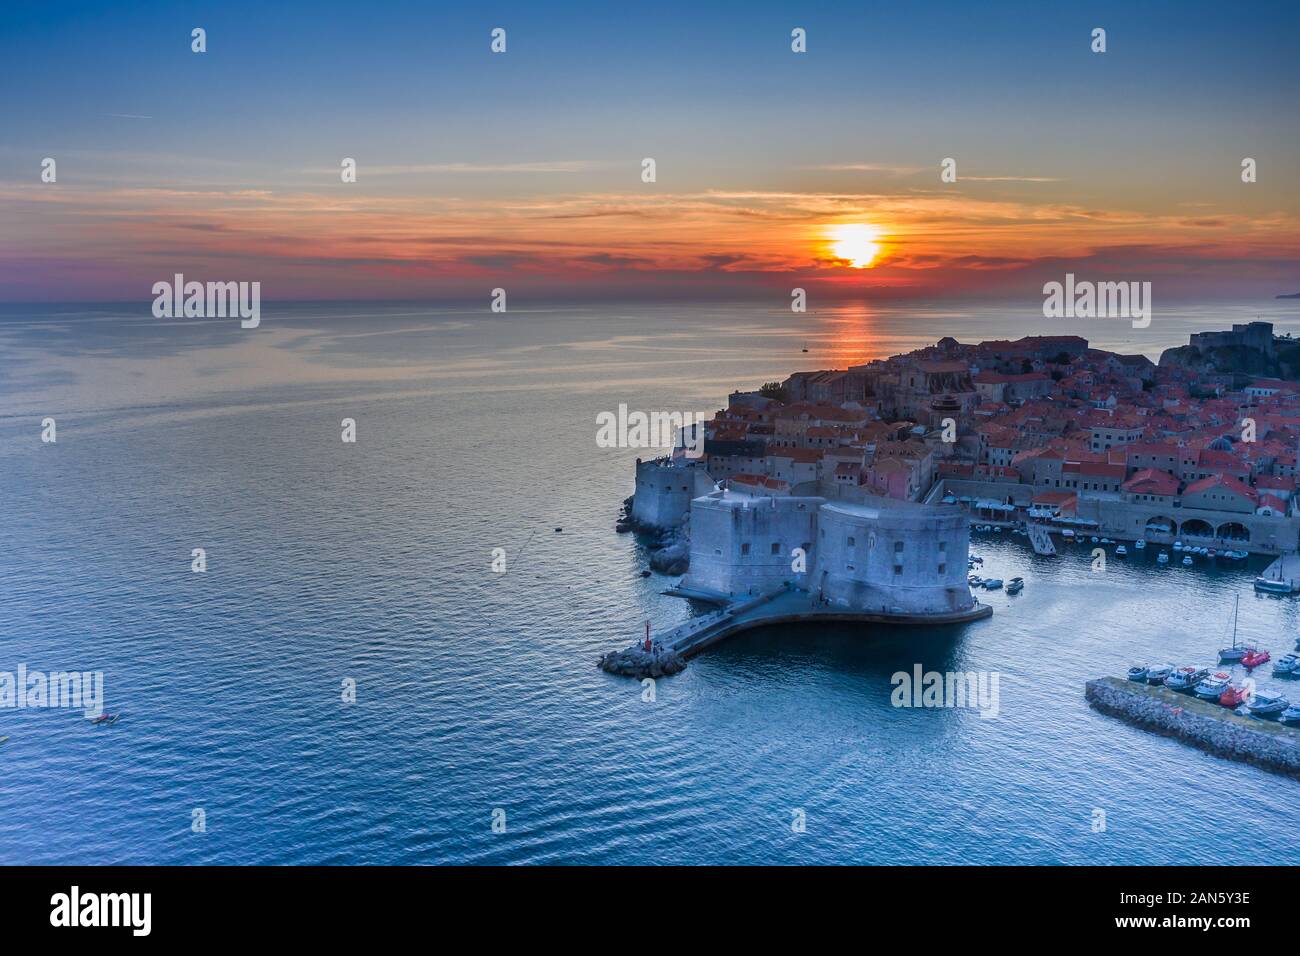 Côte croate révélant la vieille ville de Dubrovnik et les murs de la ville au coucher du soleil.vieille ville européenne et mer Adriatique.Plage de Banje à Dubrovnik, région de la Dalmatie Banque D'Images